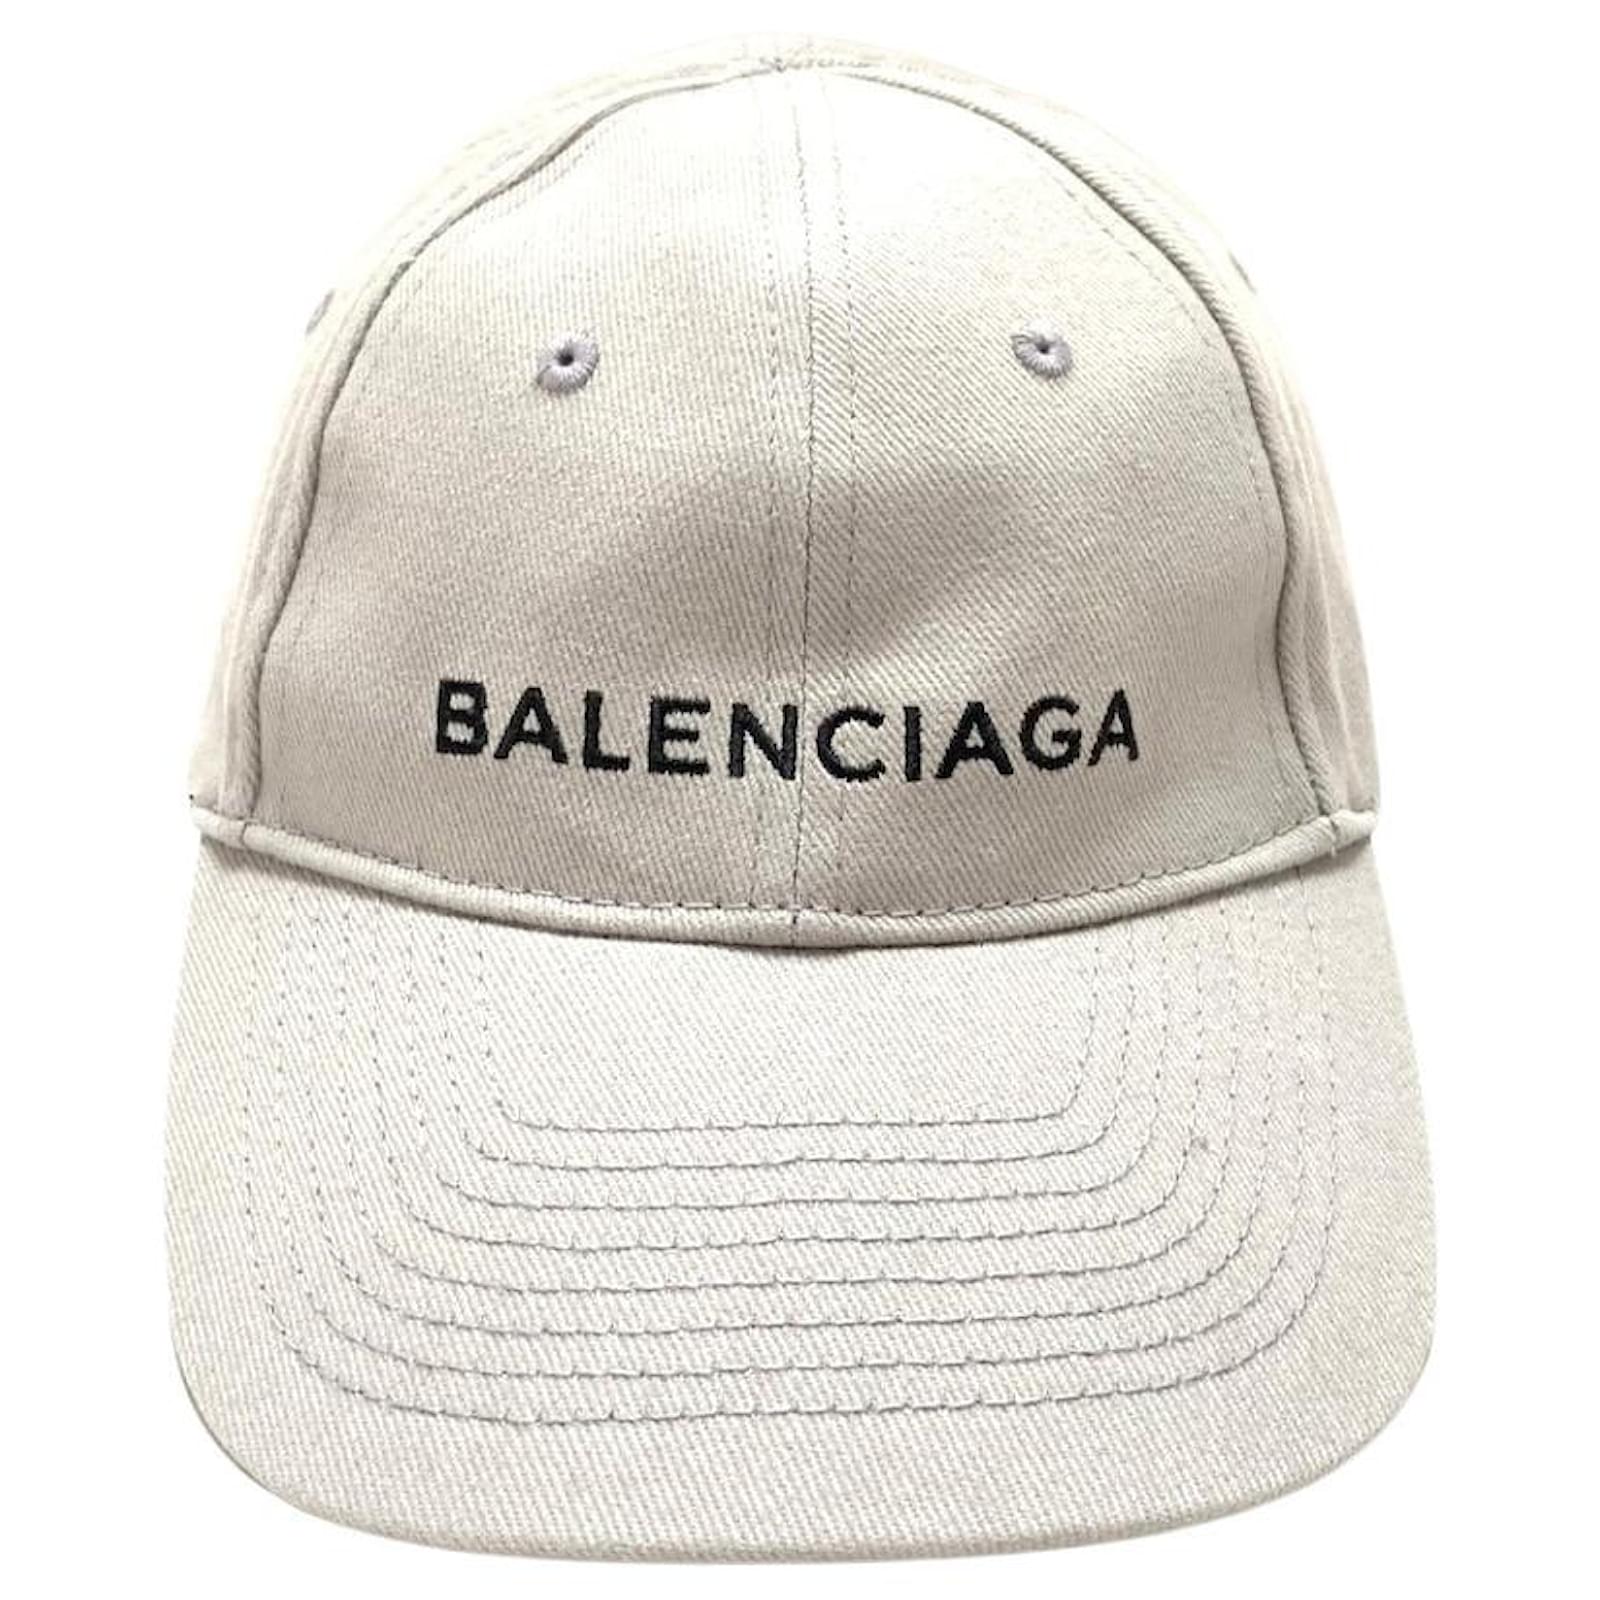 Balenciaga Balenciaga 2017 Campaign Dad Hat  Grailed